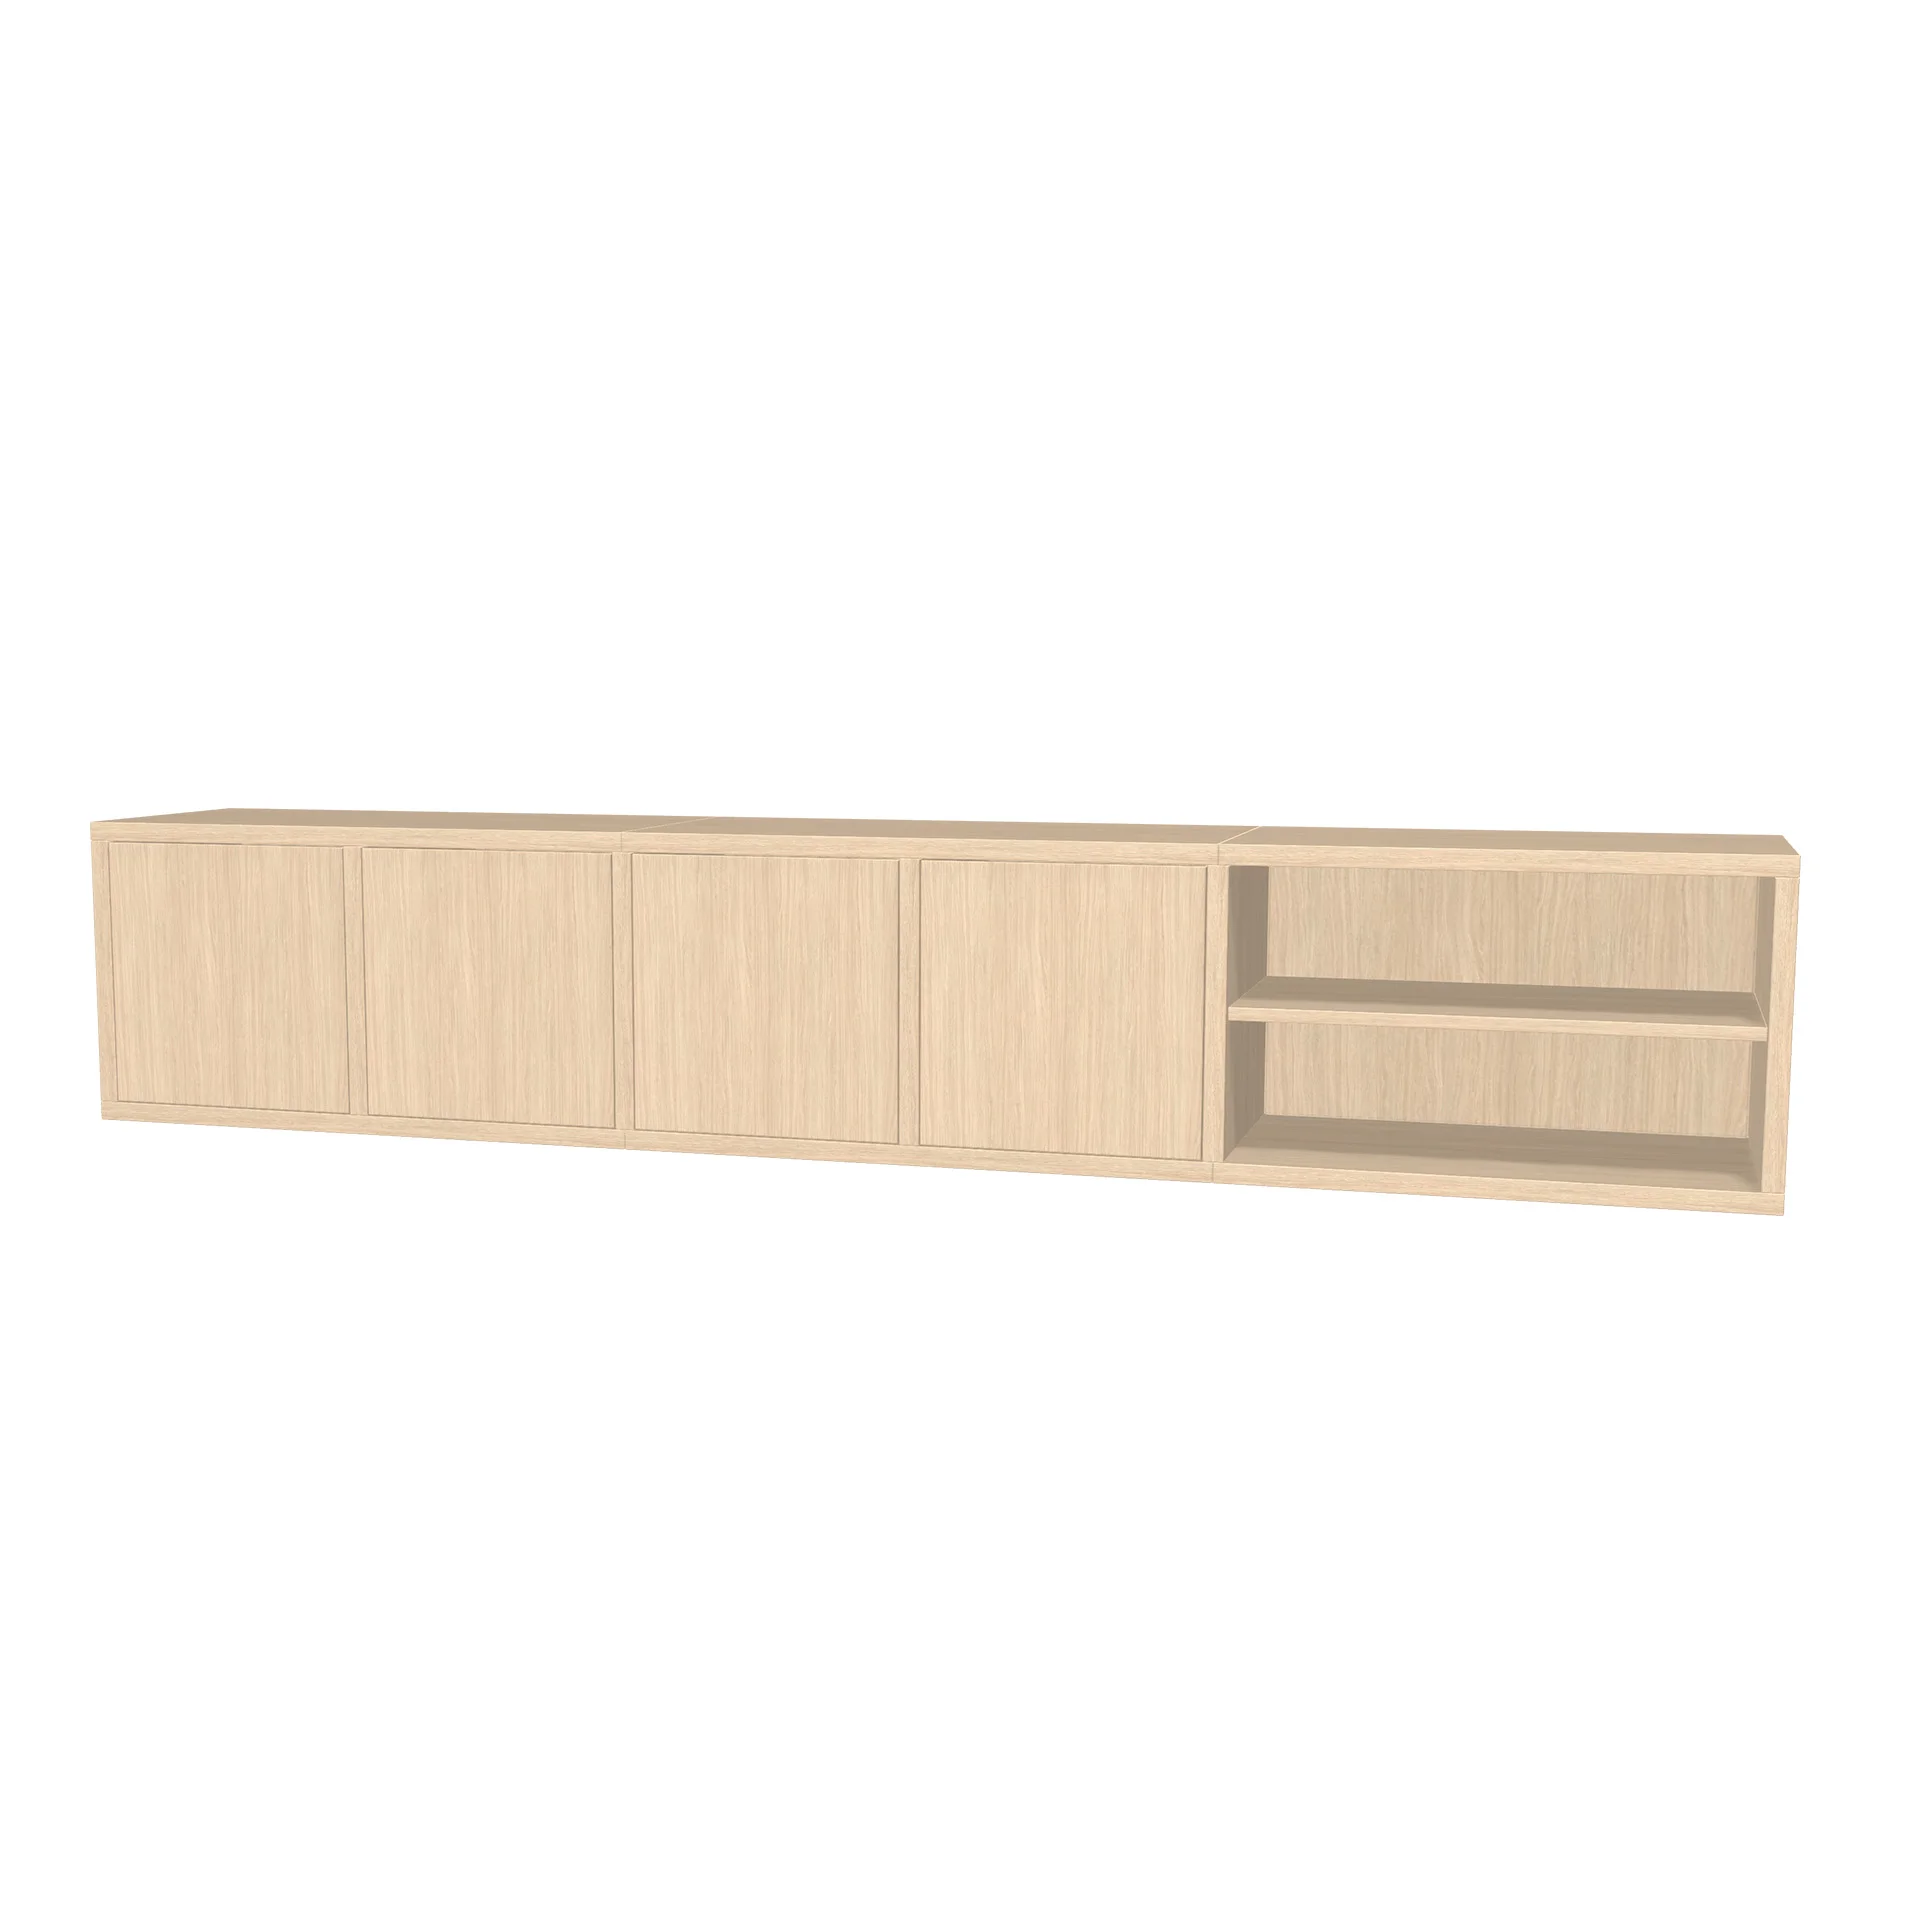 TSFC027 in natural oak furniture board